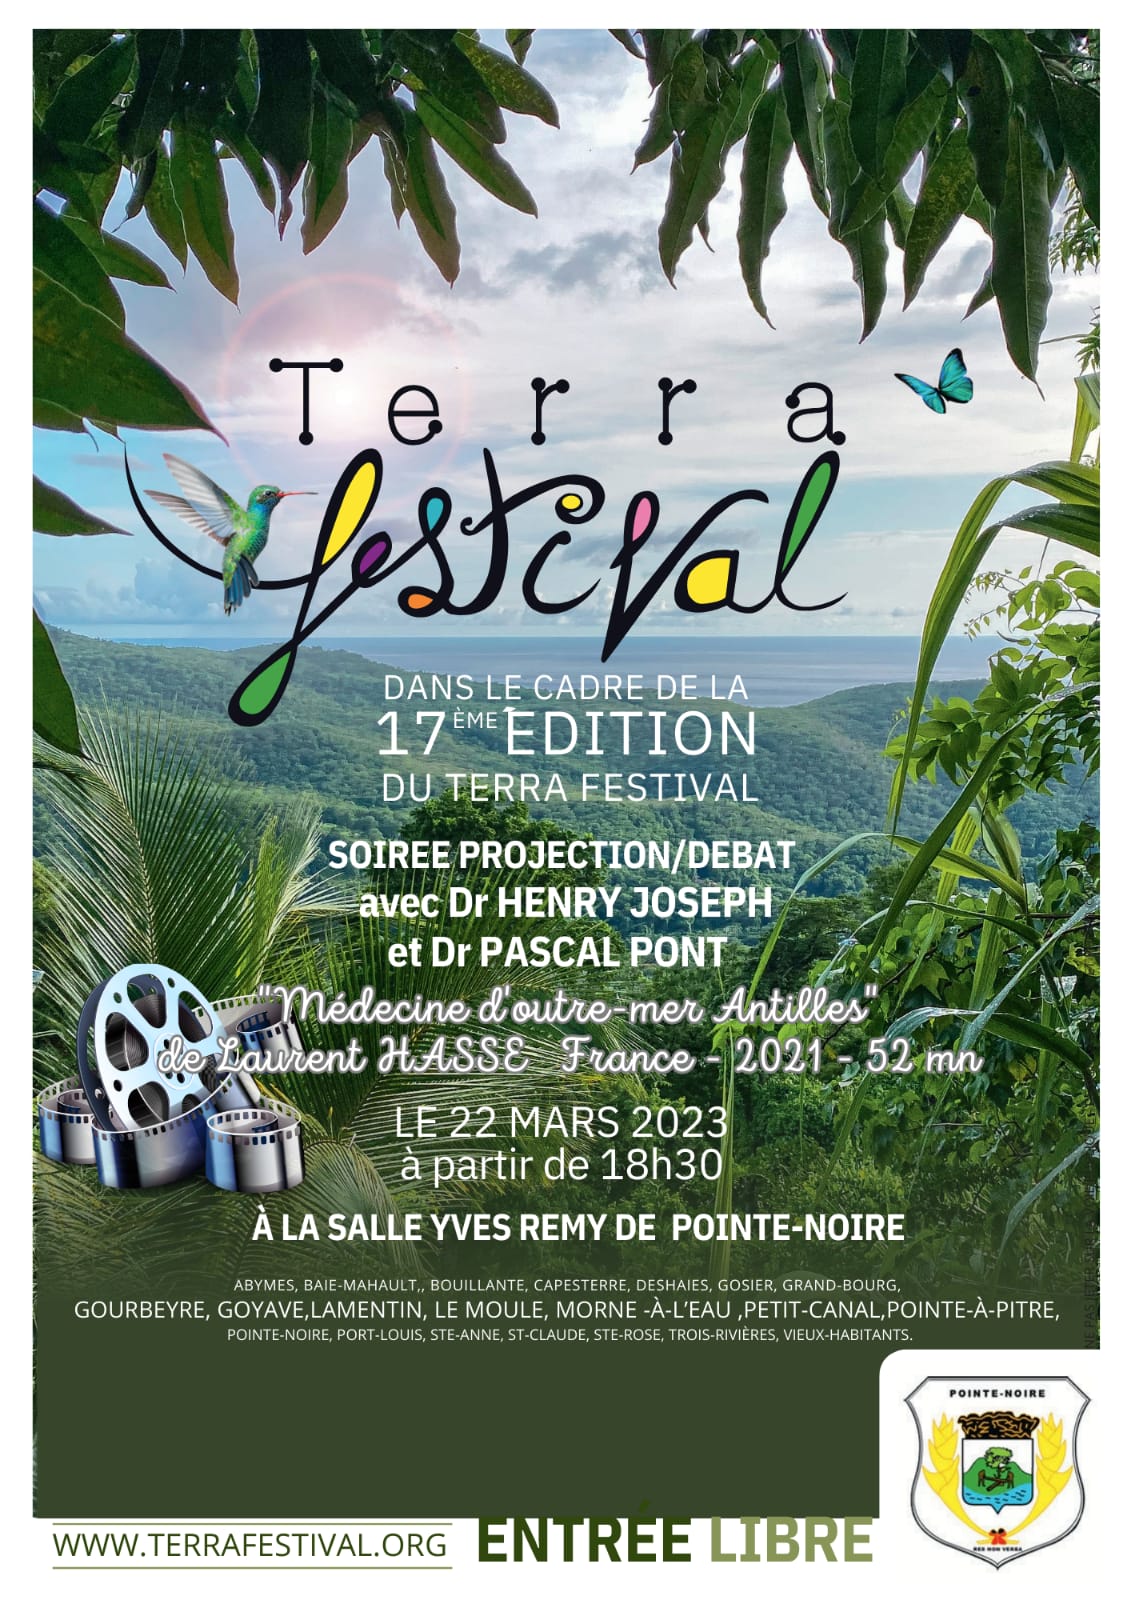 Terra Festival | Dr Henri Joseh | Plantes médicinales Guadeloupe | Médecine d'outre-mer | Laurent Hasse | Conférence Guadeloupe | Evenements Guadeloupe 